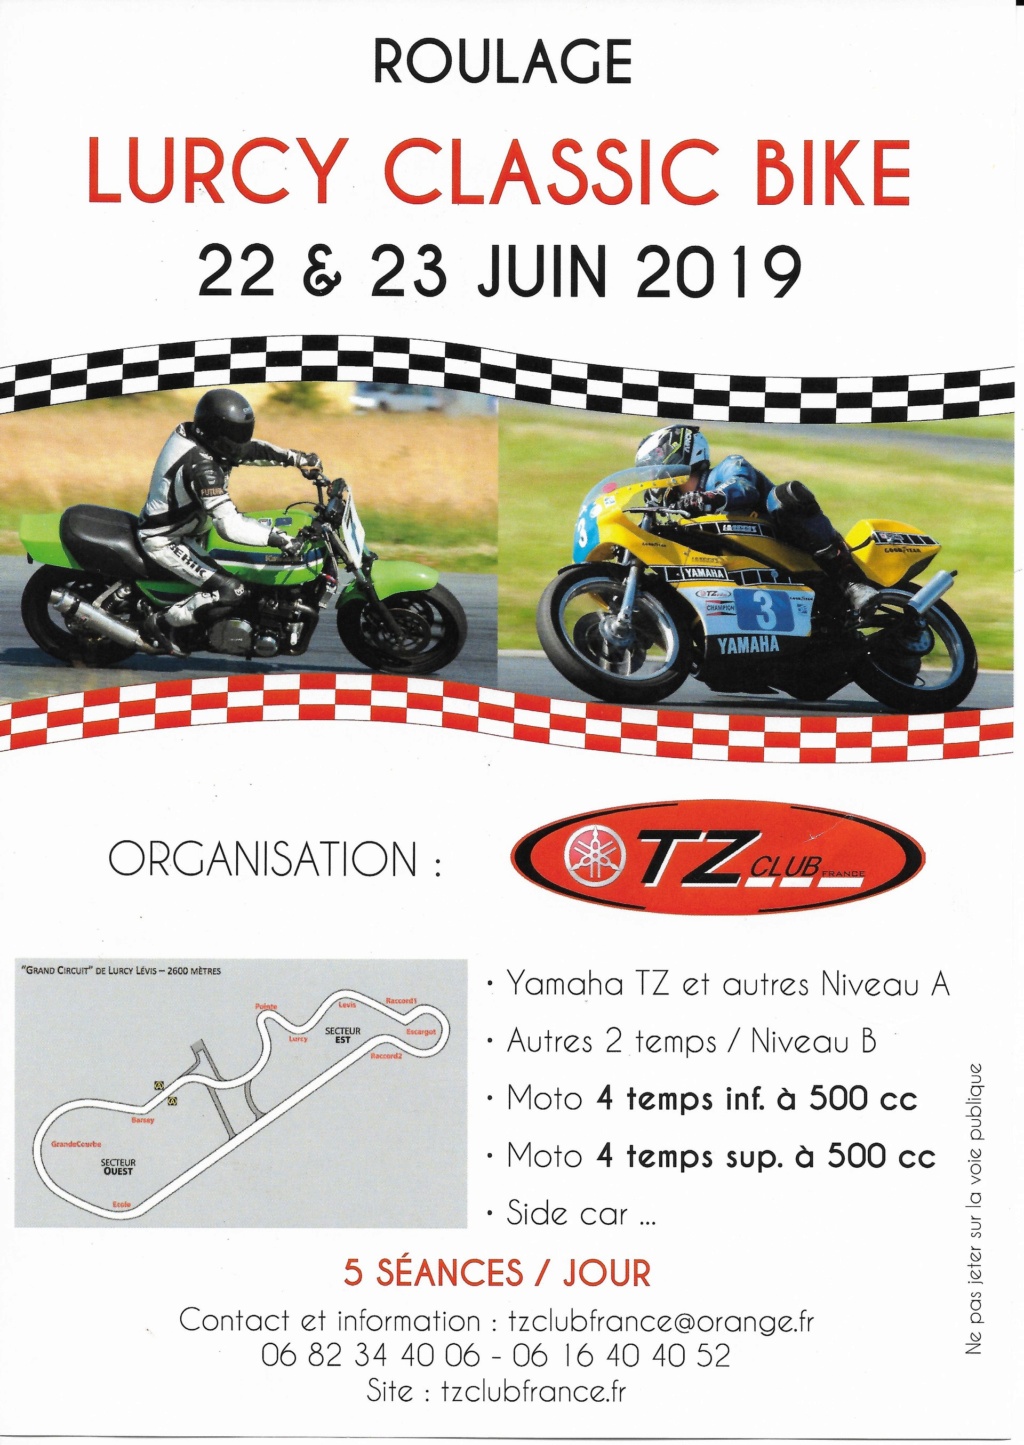 EVENEMENTS MOTOS ANCIENNES Calendrier évènementiel des Grands-Mères Motos Montmorillonnaises 2019lu10